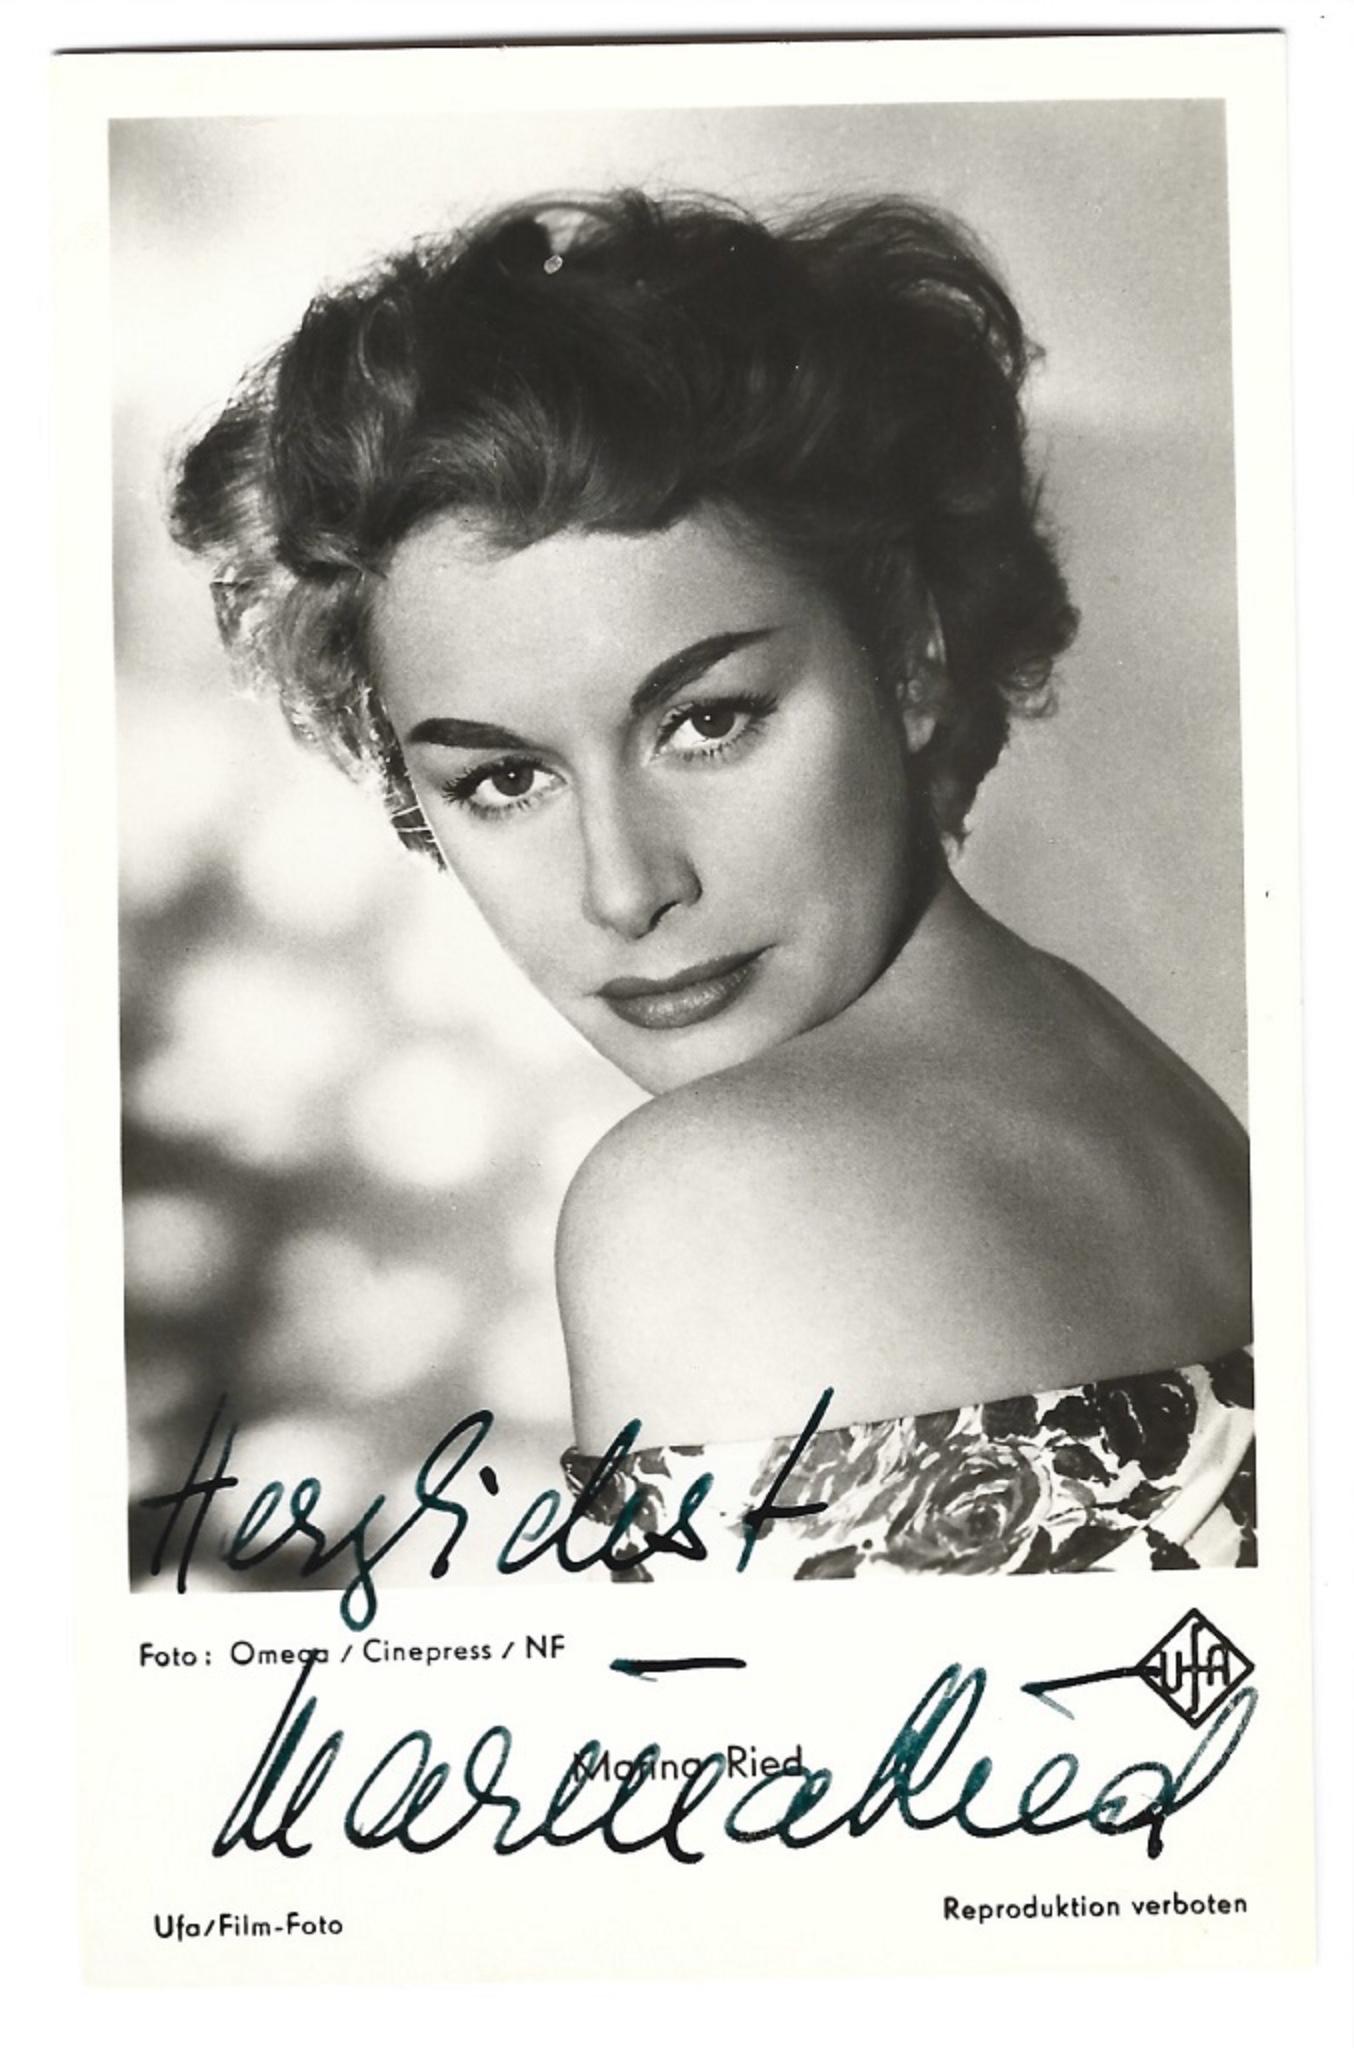 Unknown Portrait Photograph - Autographed Portrait of Marina Ried - Vintage b/w Postcard - 1950s